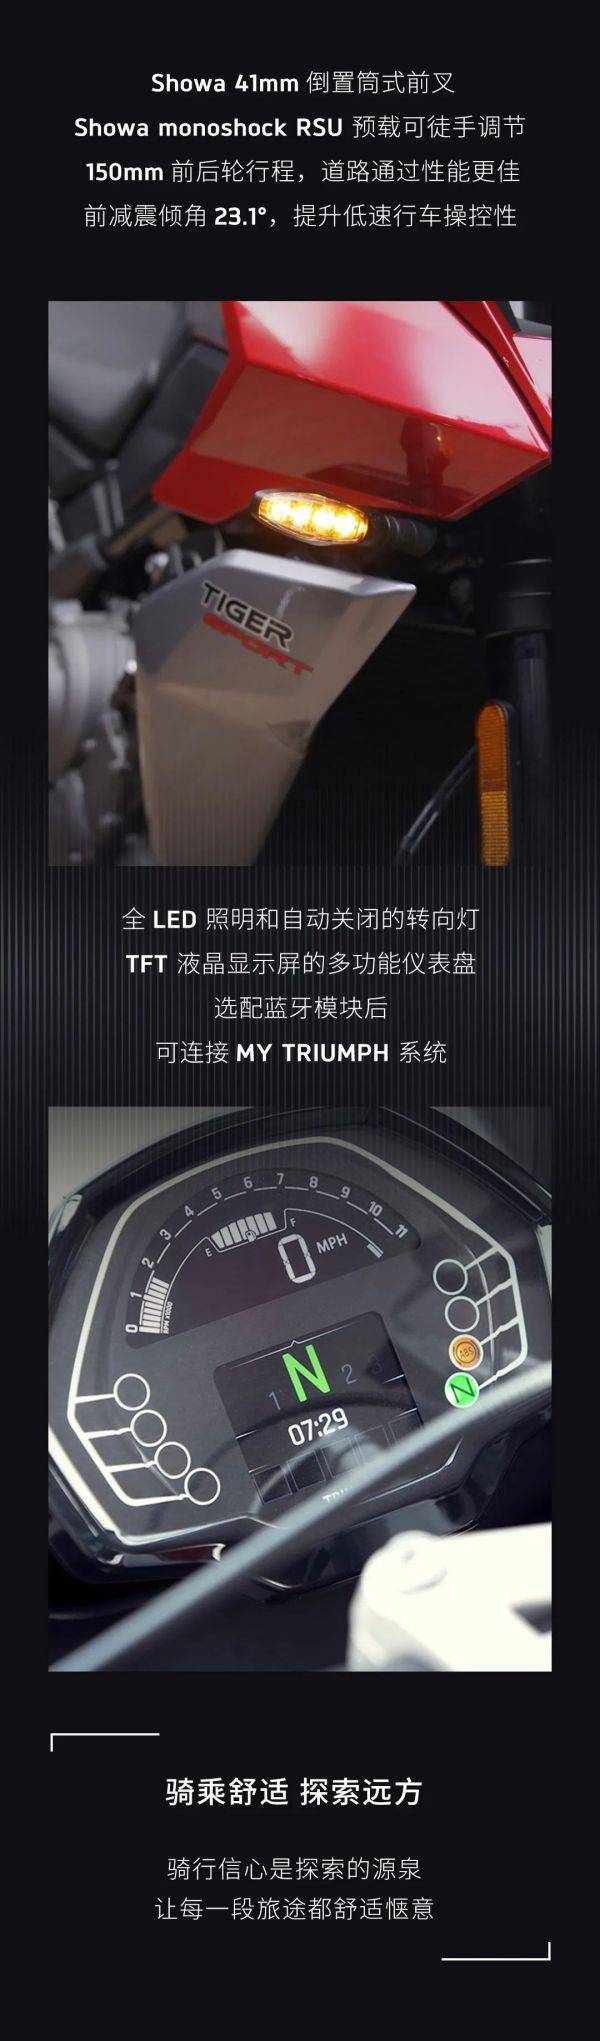 凯旋Triumph TIGER SPORT 660 正式发布!售价:105895元